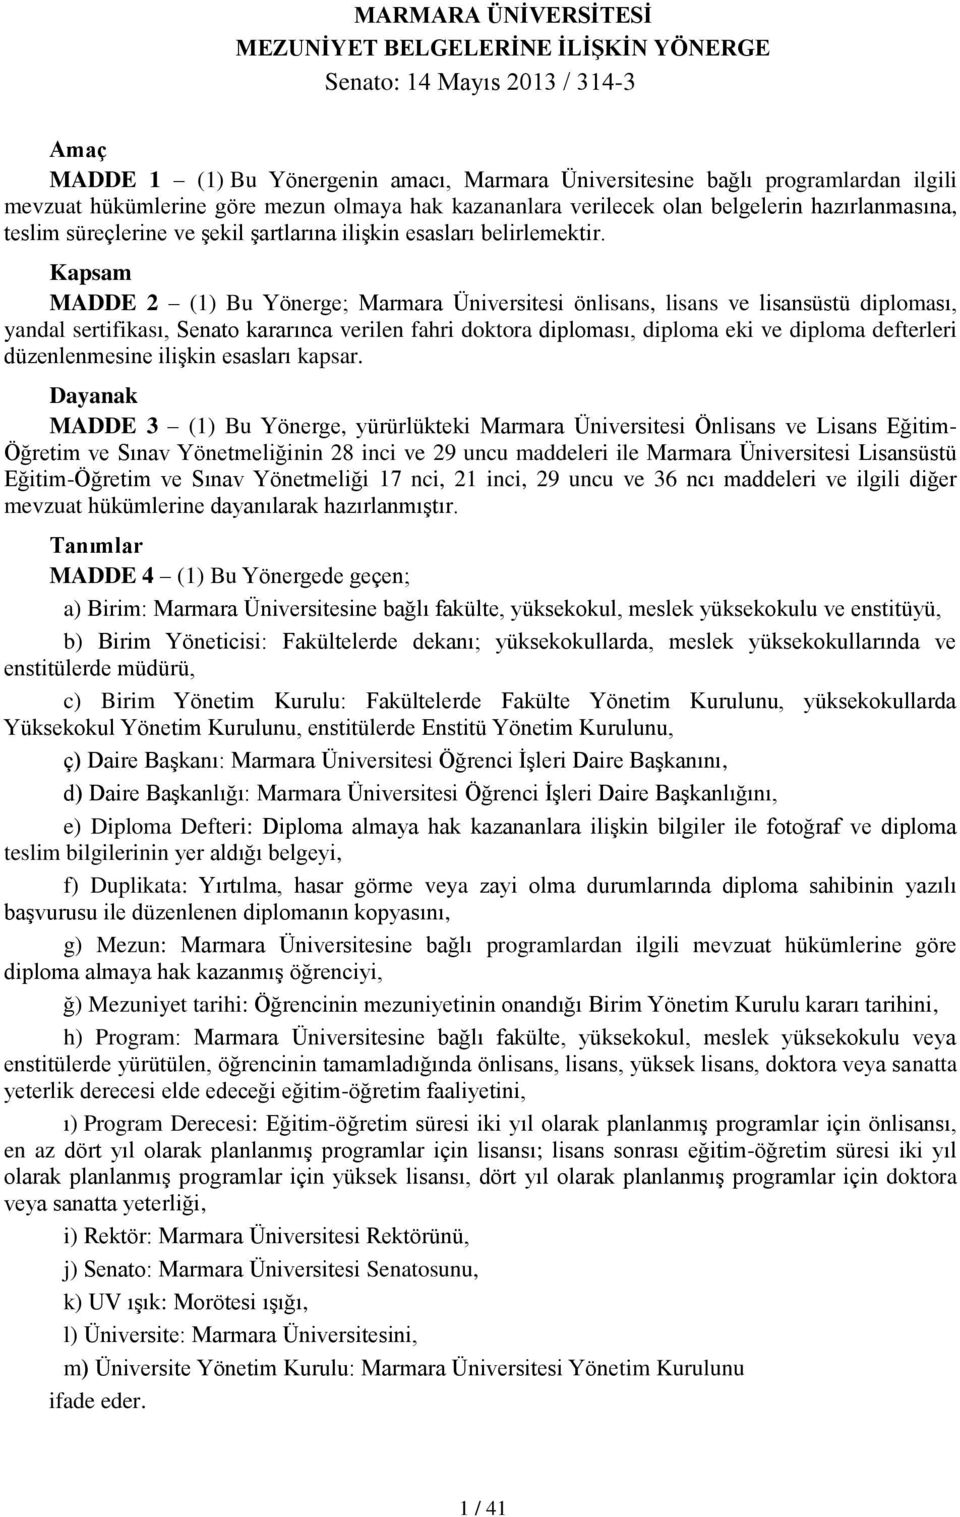 Kapsam MADDE 2 (1) Bu Yönerge; Marmara Üniversitesi önlisans, lisans ve lisansüstü diploması, yandal sertifikası, Senato kararınca verilen fahri doktora diploması, diploma eki ve diploma defterleri